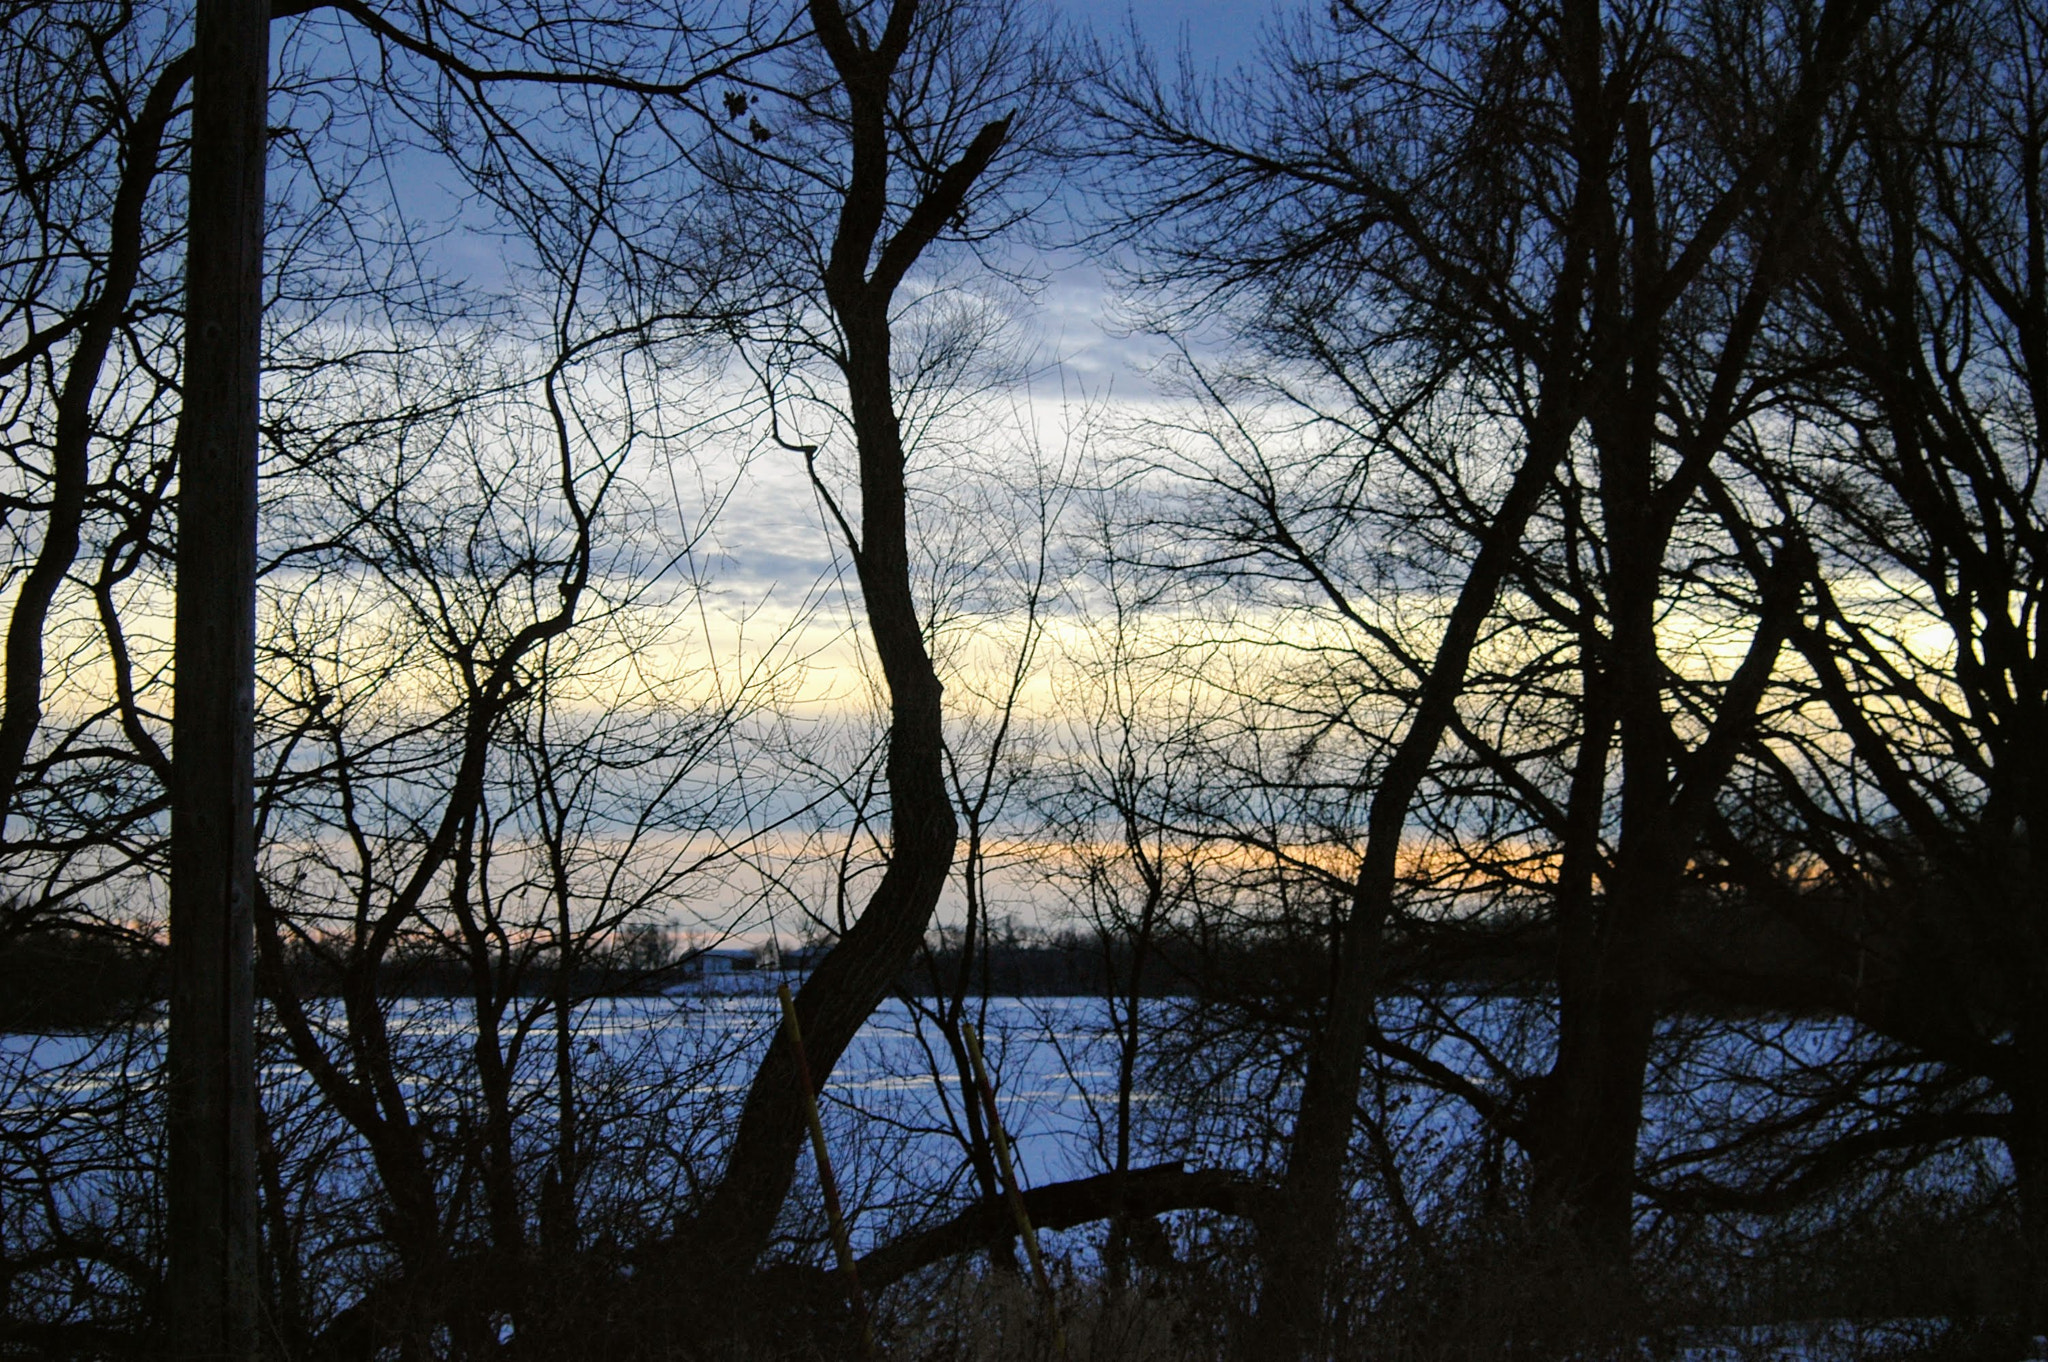 AF Zoom-Nikkor 35-80mm f/4-5.6D sample photo. Sunset in rural minnesota photography